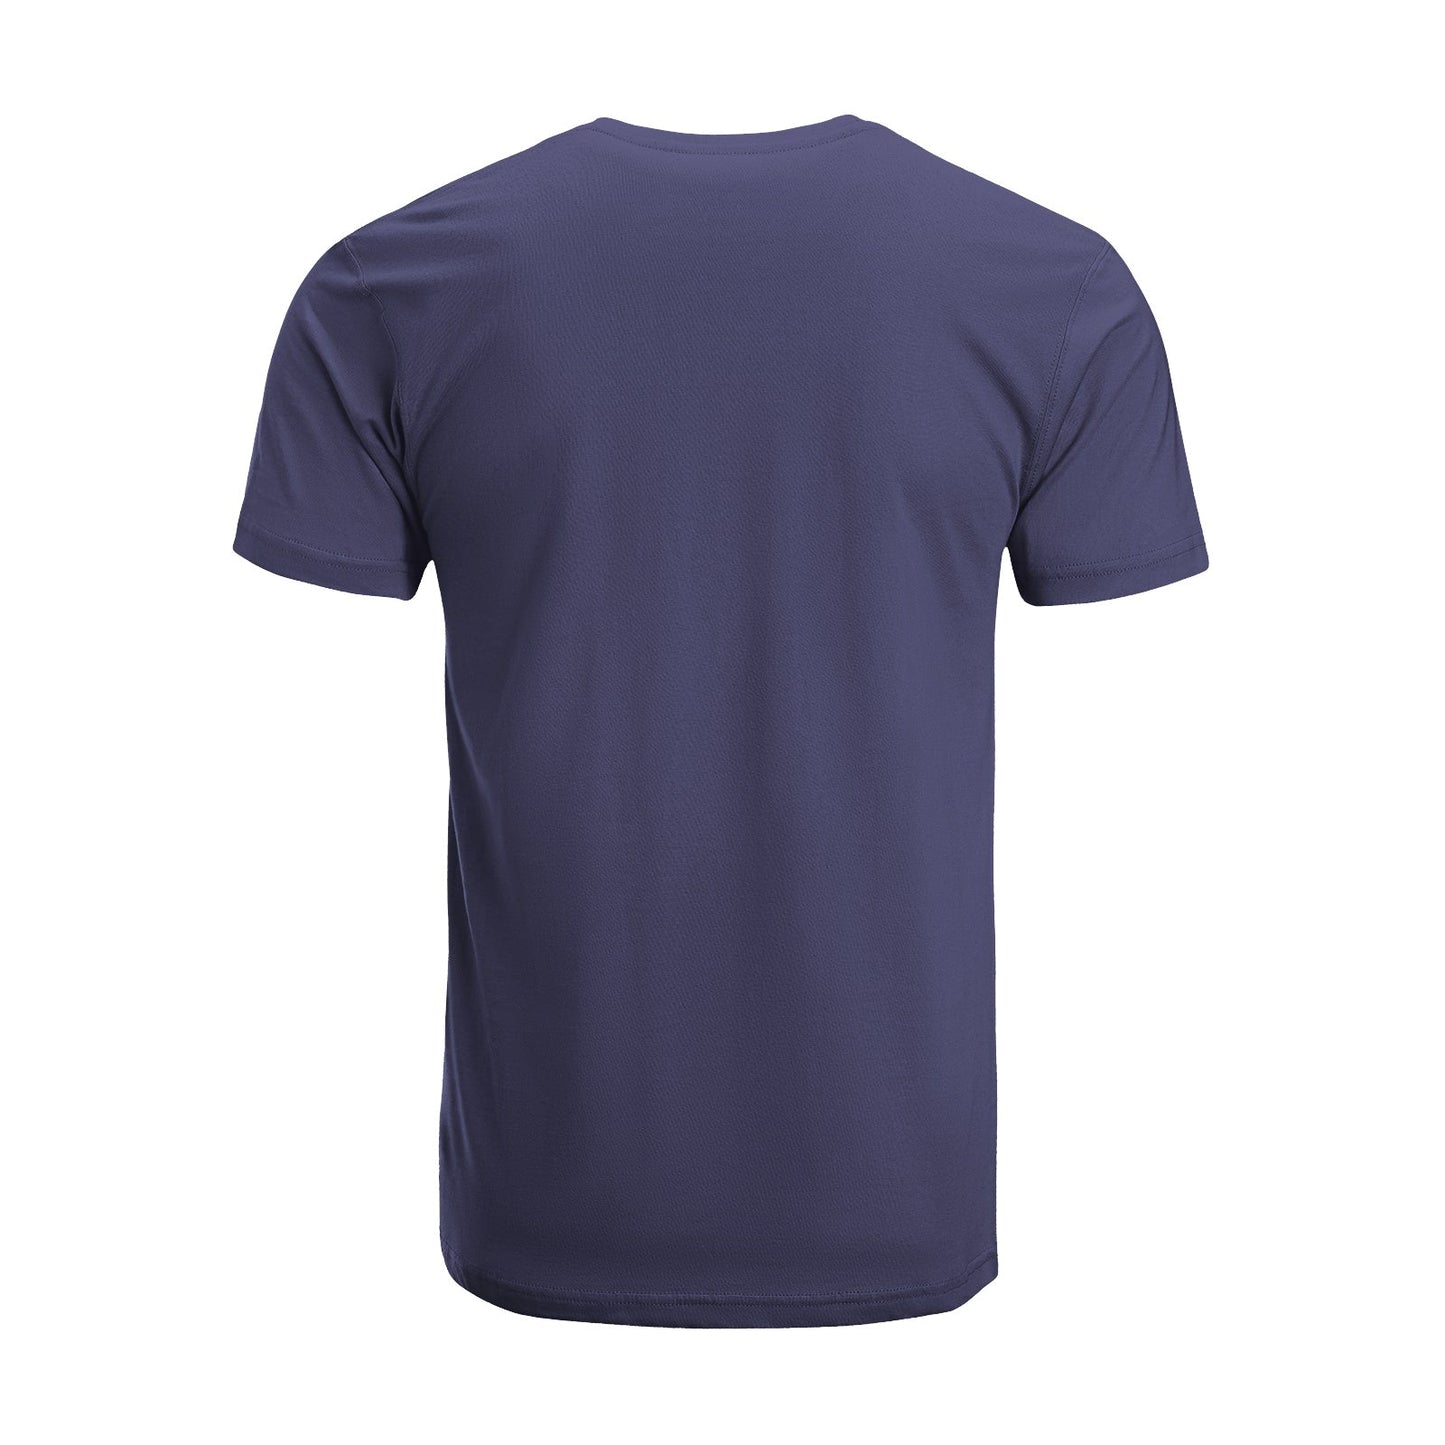 Unisex Short Sleeve Crew Neck Cotton Jersey T-Shirt TRUCK 26